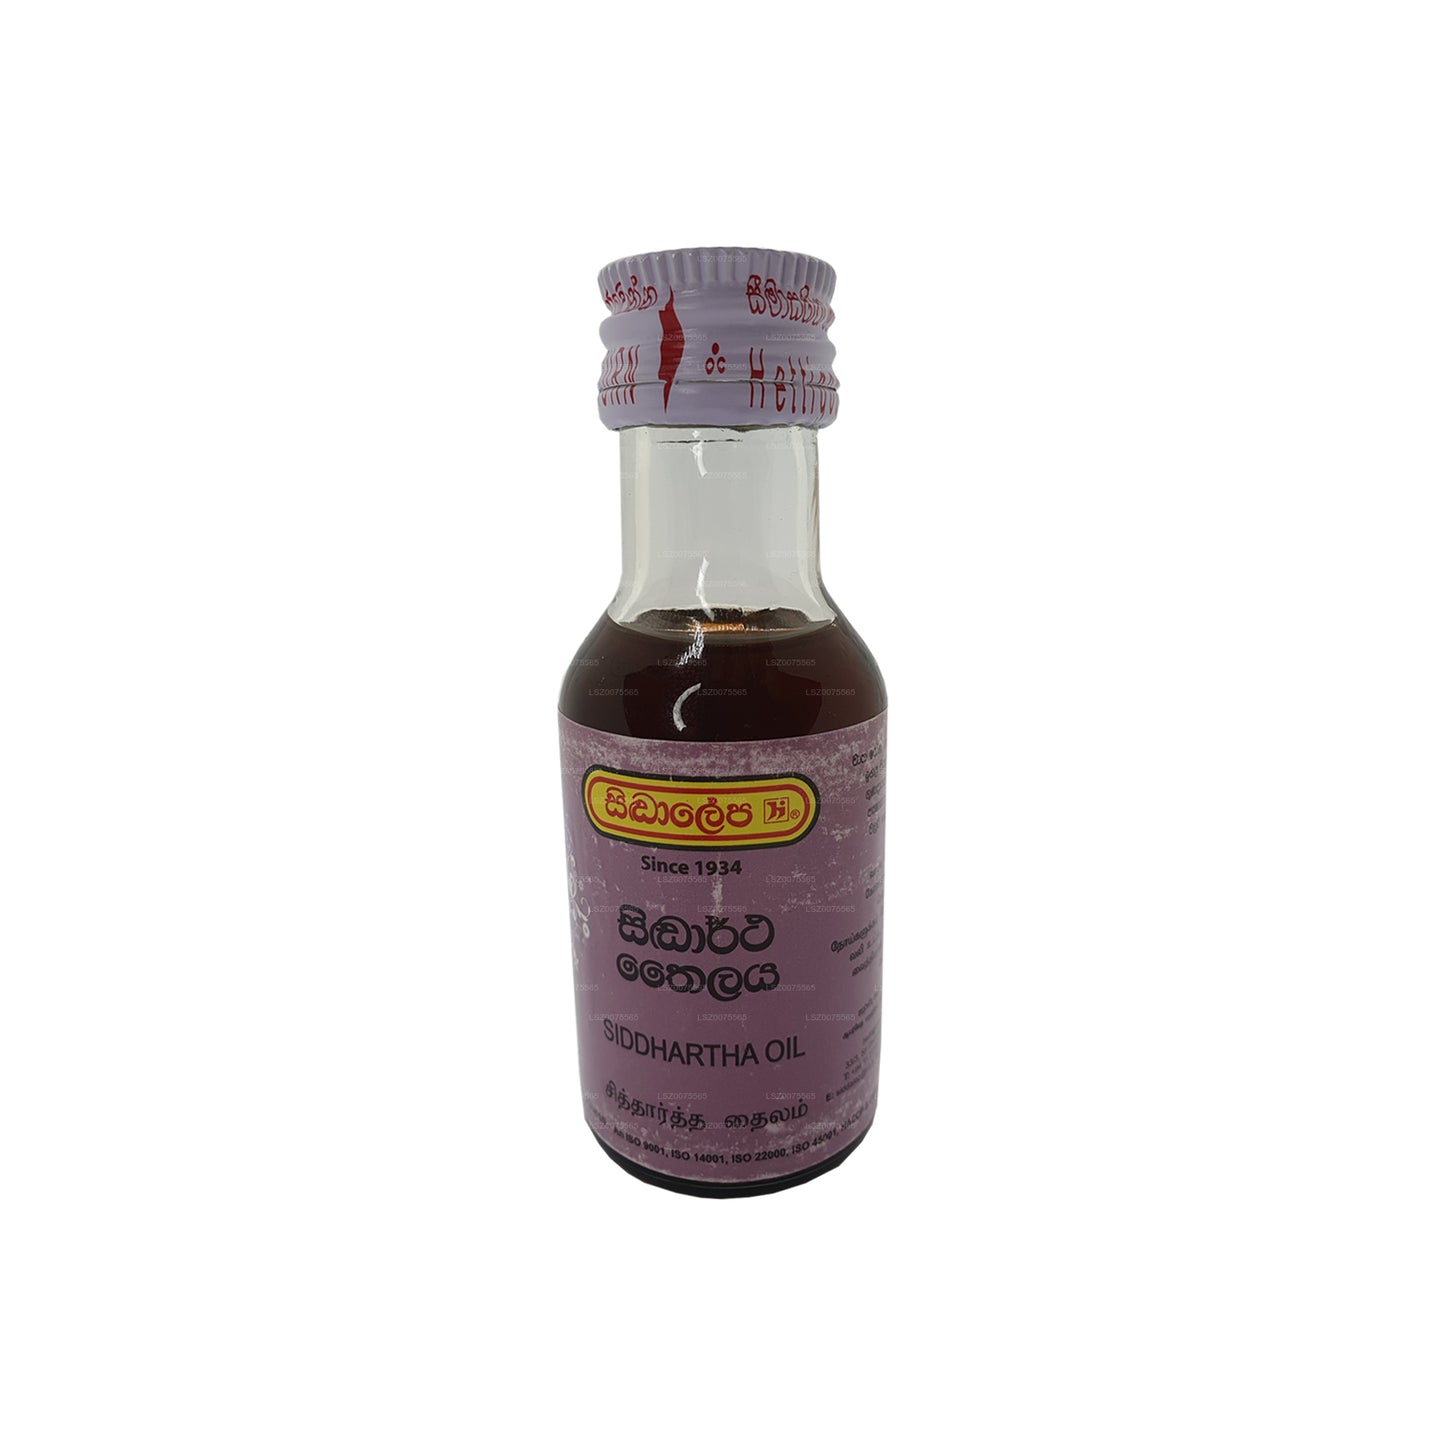 Siddhalepa Siddartha-Öl (30 ml)